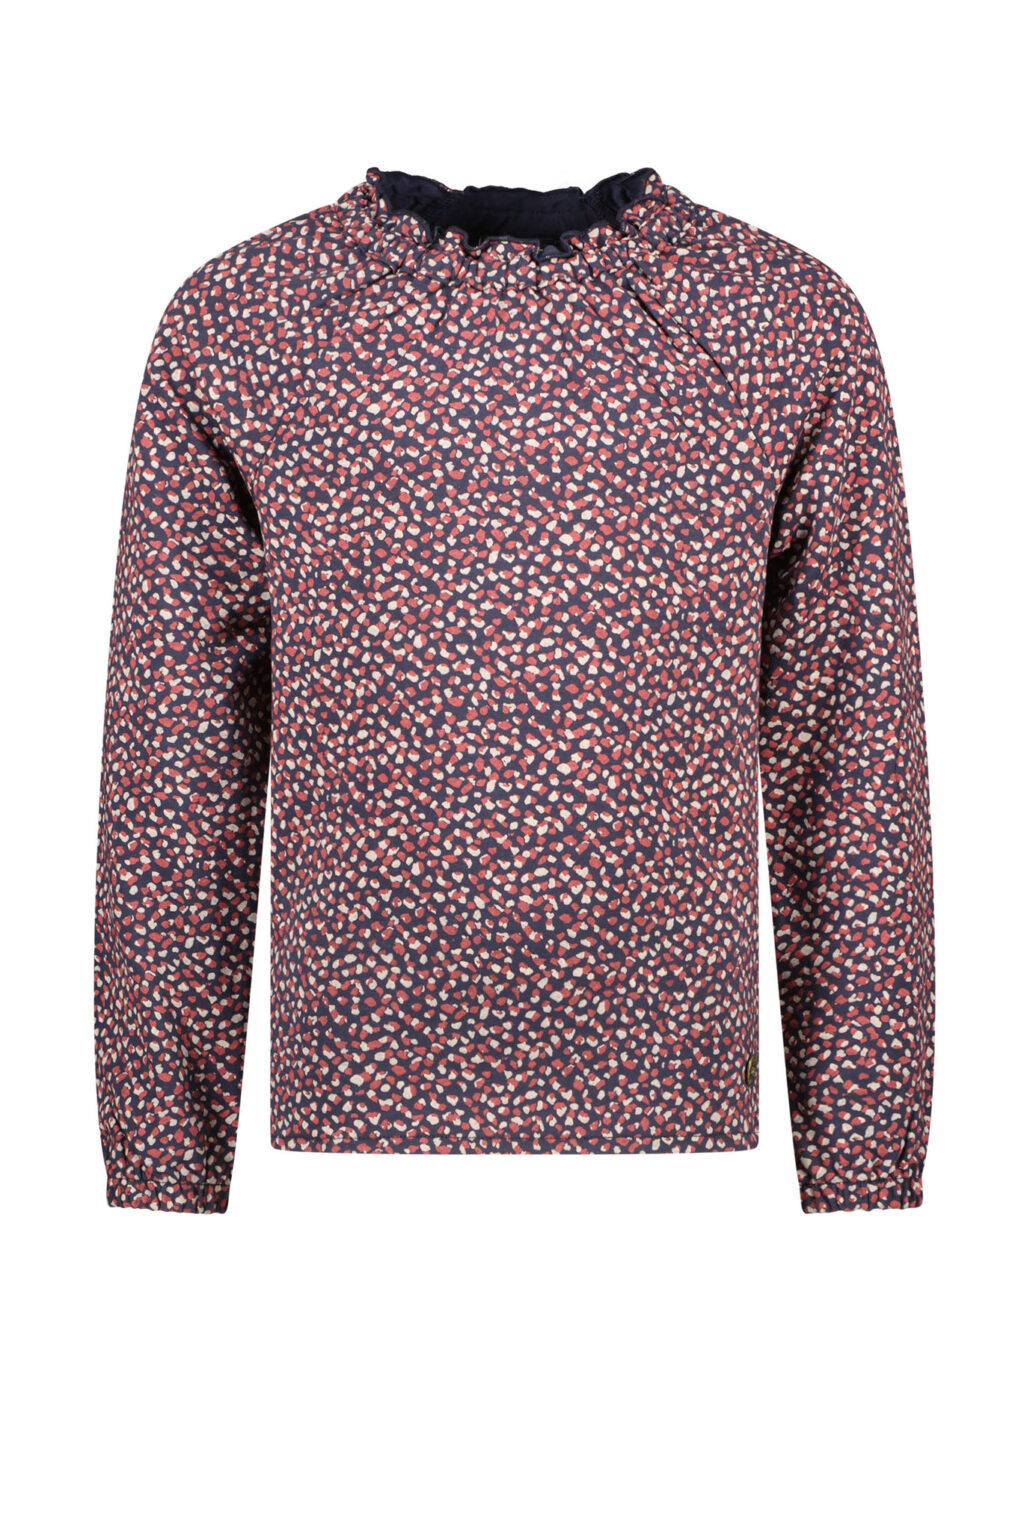 Like Flo Meisjes sweater - Dot ~ Spinze.nl